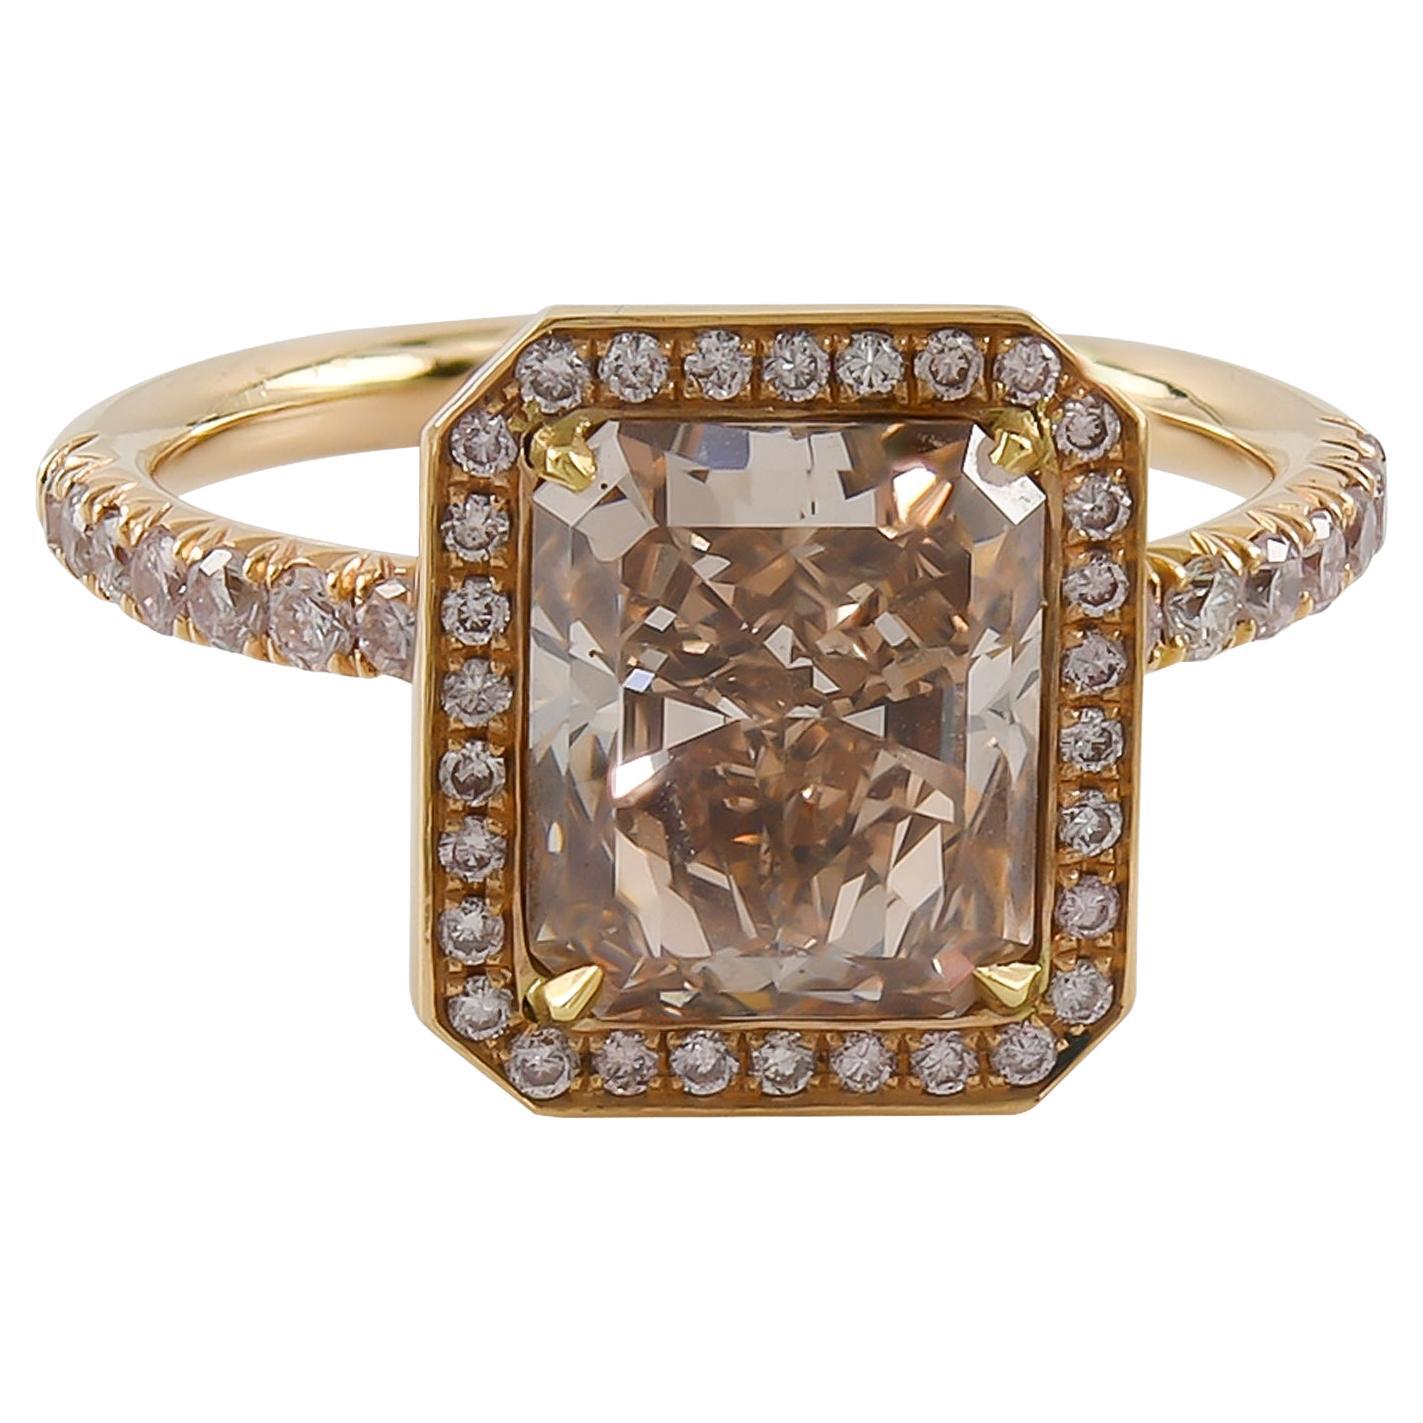 Spectra Fine Jewelry Bague en diamant certifié GIA de 3,02 carats de couleur rose-brun fantaisie